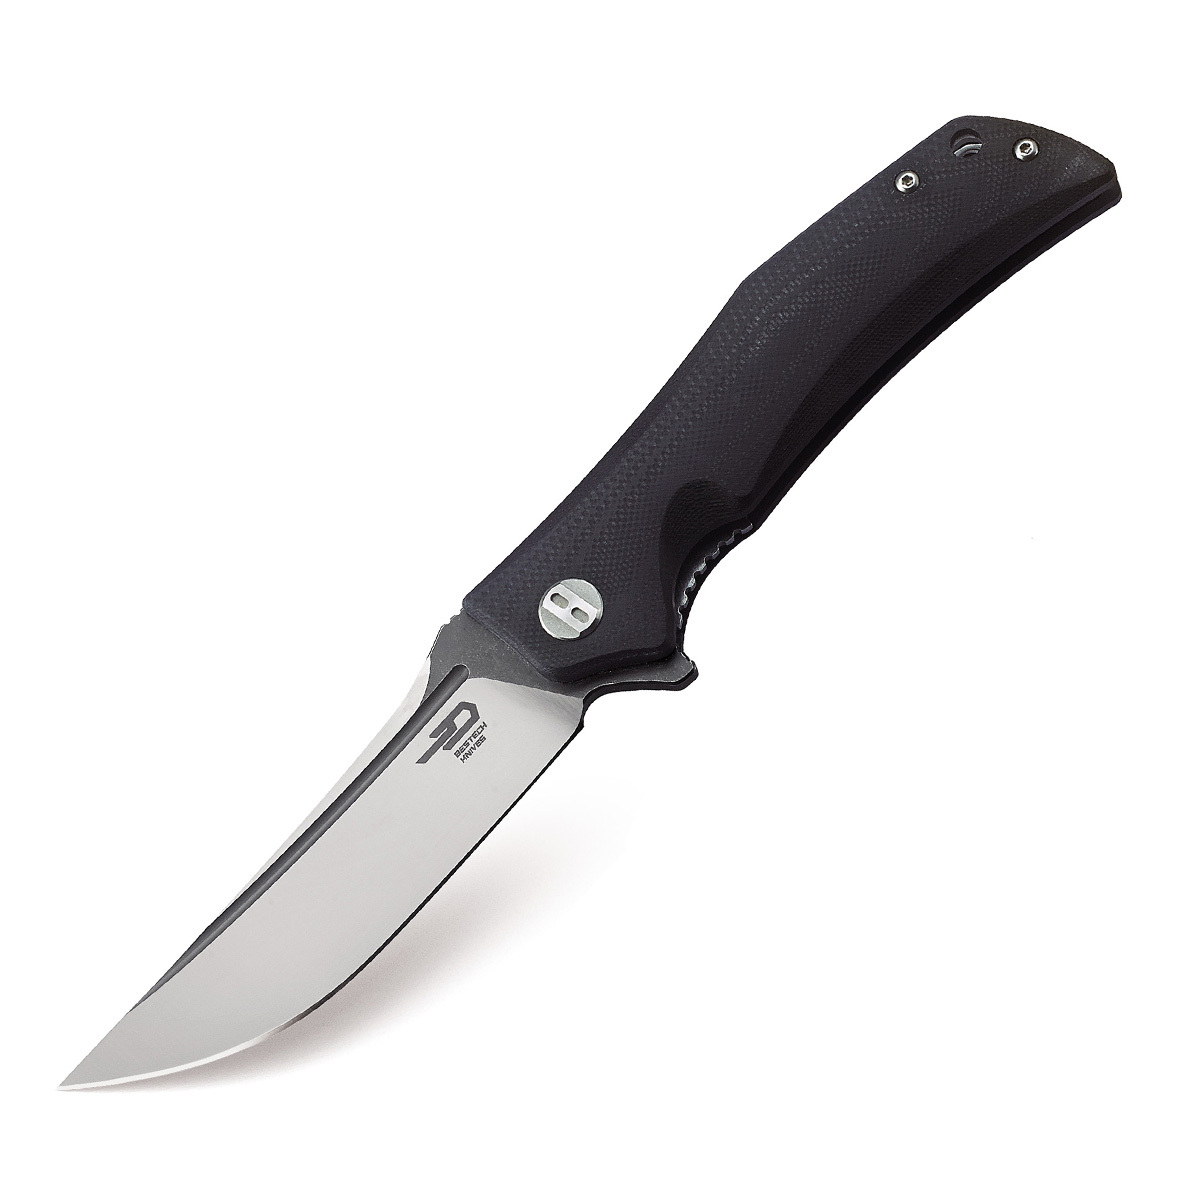 Складной нож Bestech Scimitar, сталь D2, рукоять G10 складной нож bestech penguin сталь d2 g10